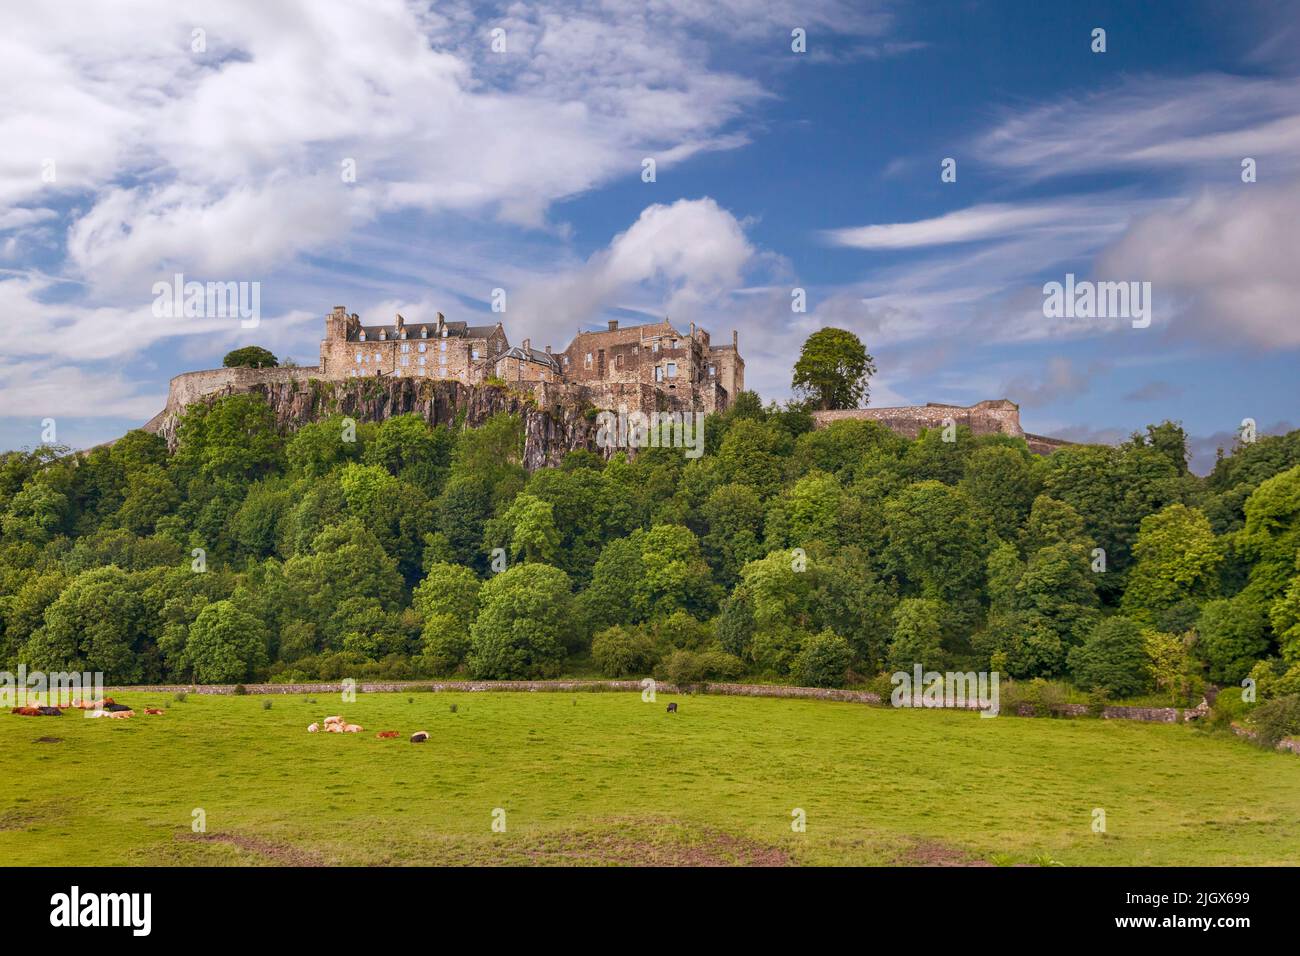 El Castillo de Stirling es uno de los castillos más grandes e importantes de Escocia, Reino Unido Foto de stock